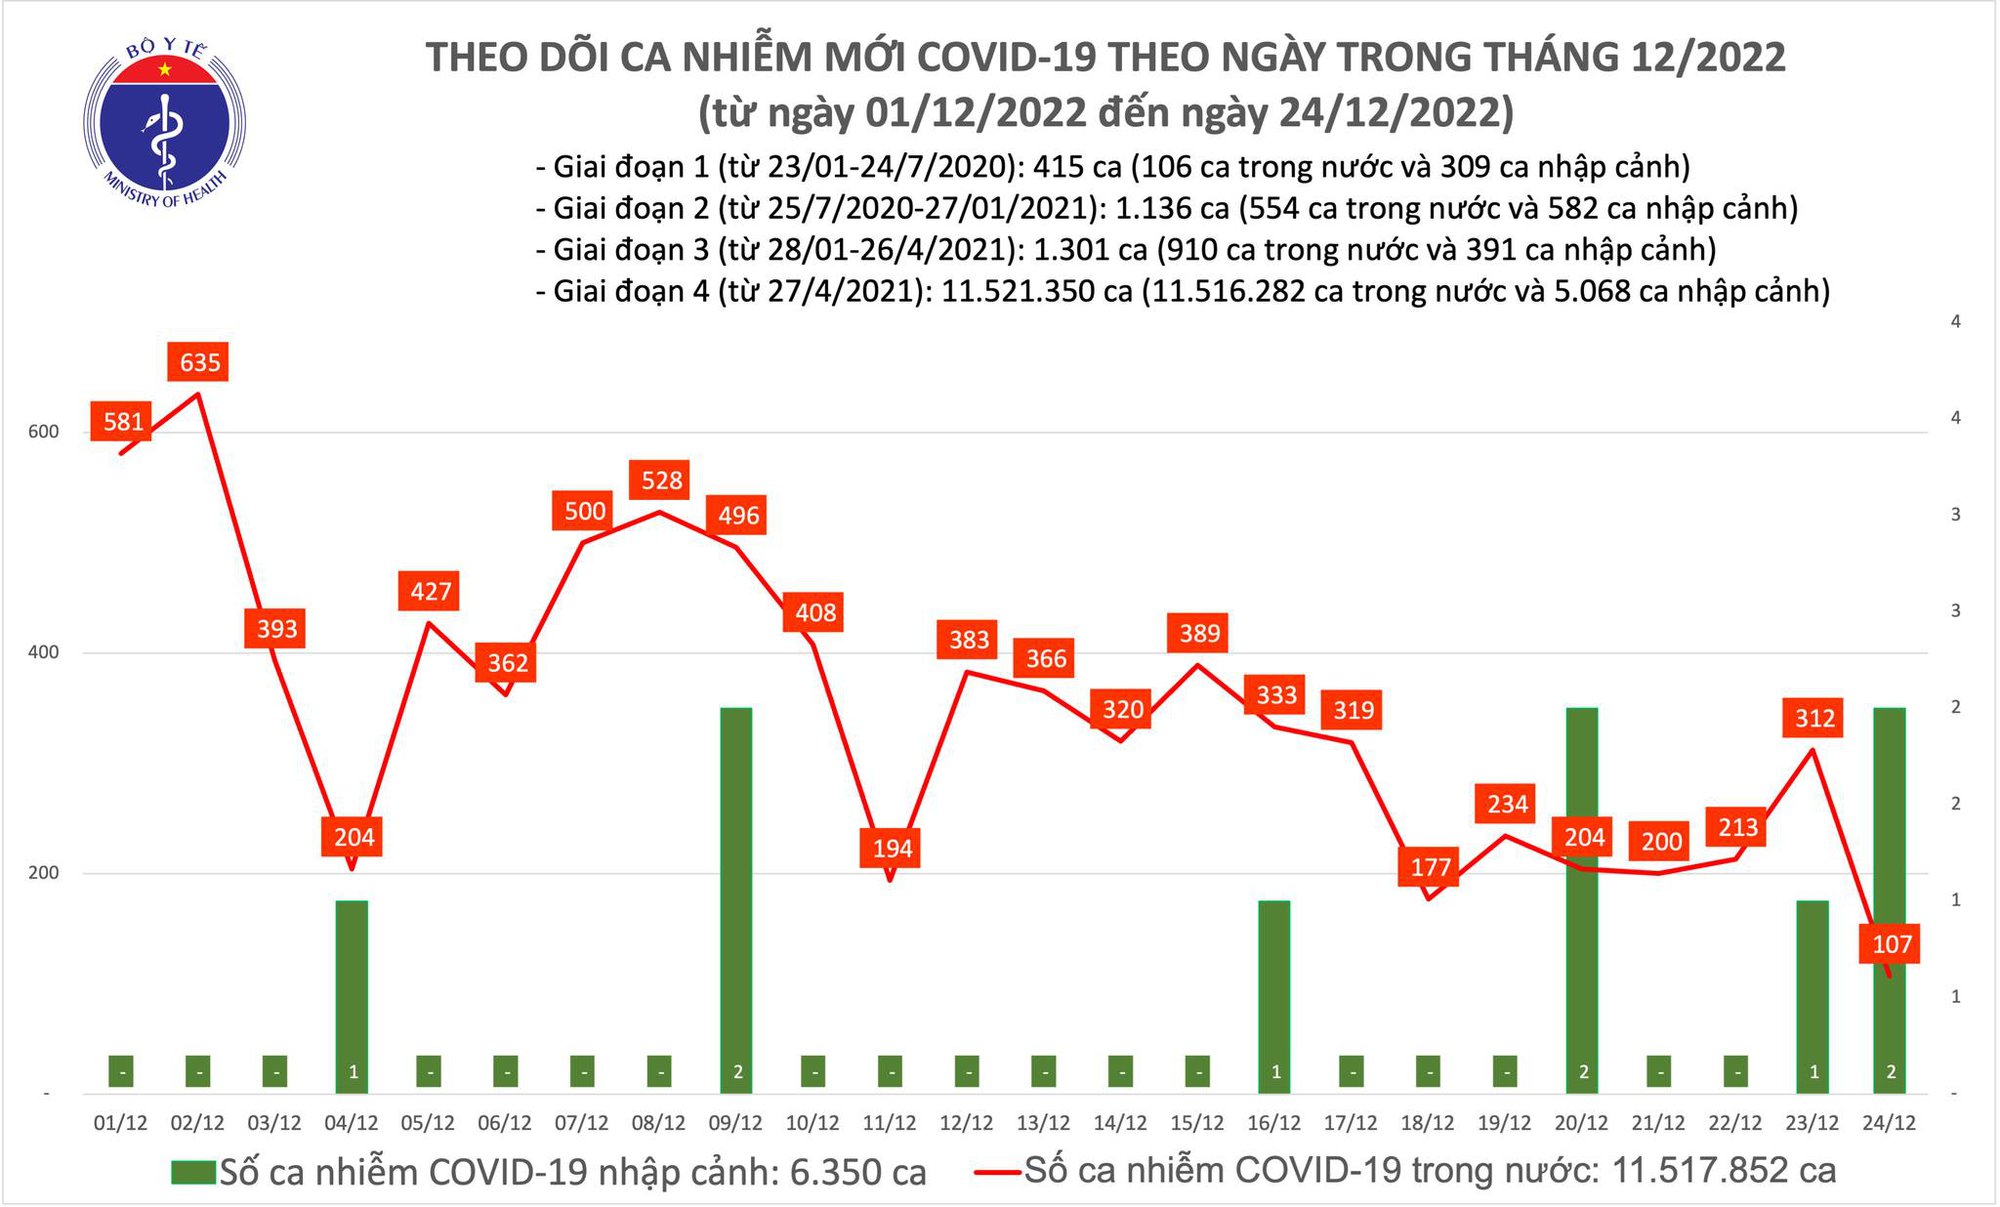 Ngày 24/12: Chỉ có 107 ca COVID-19, thấp nhất hơn 1 năm qua - Ảnh 2.